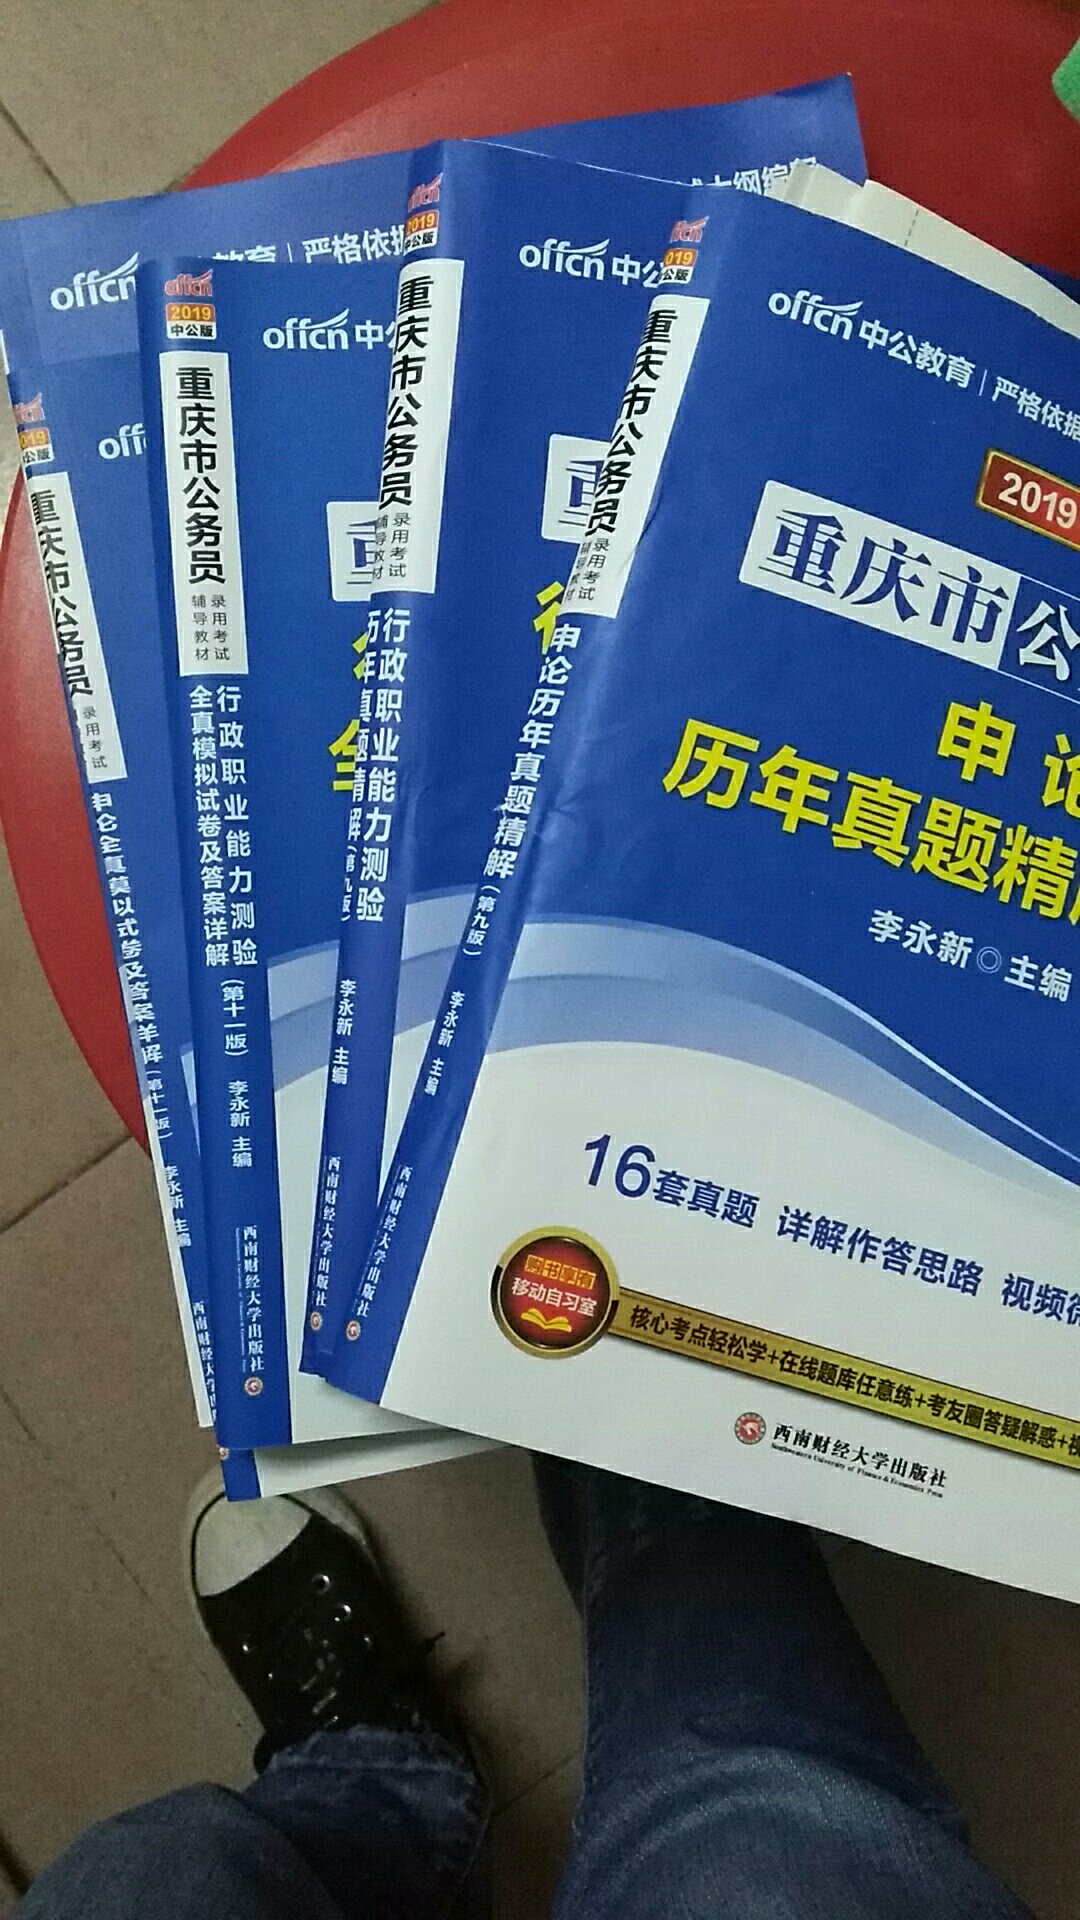 打算今年考考重庆的公务员，现在买书，希望不晚。